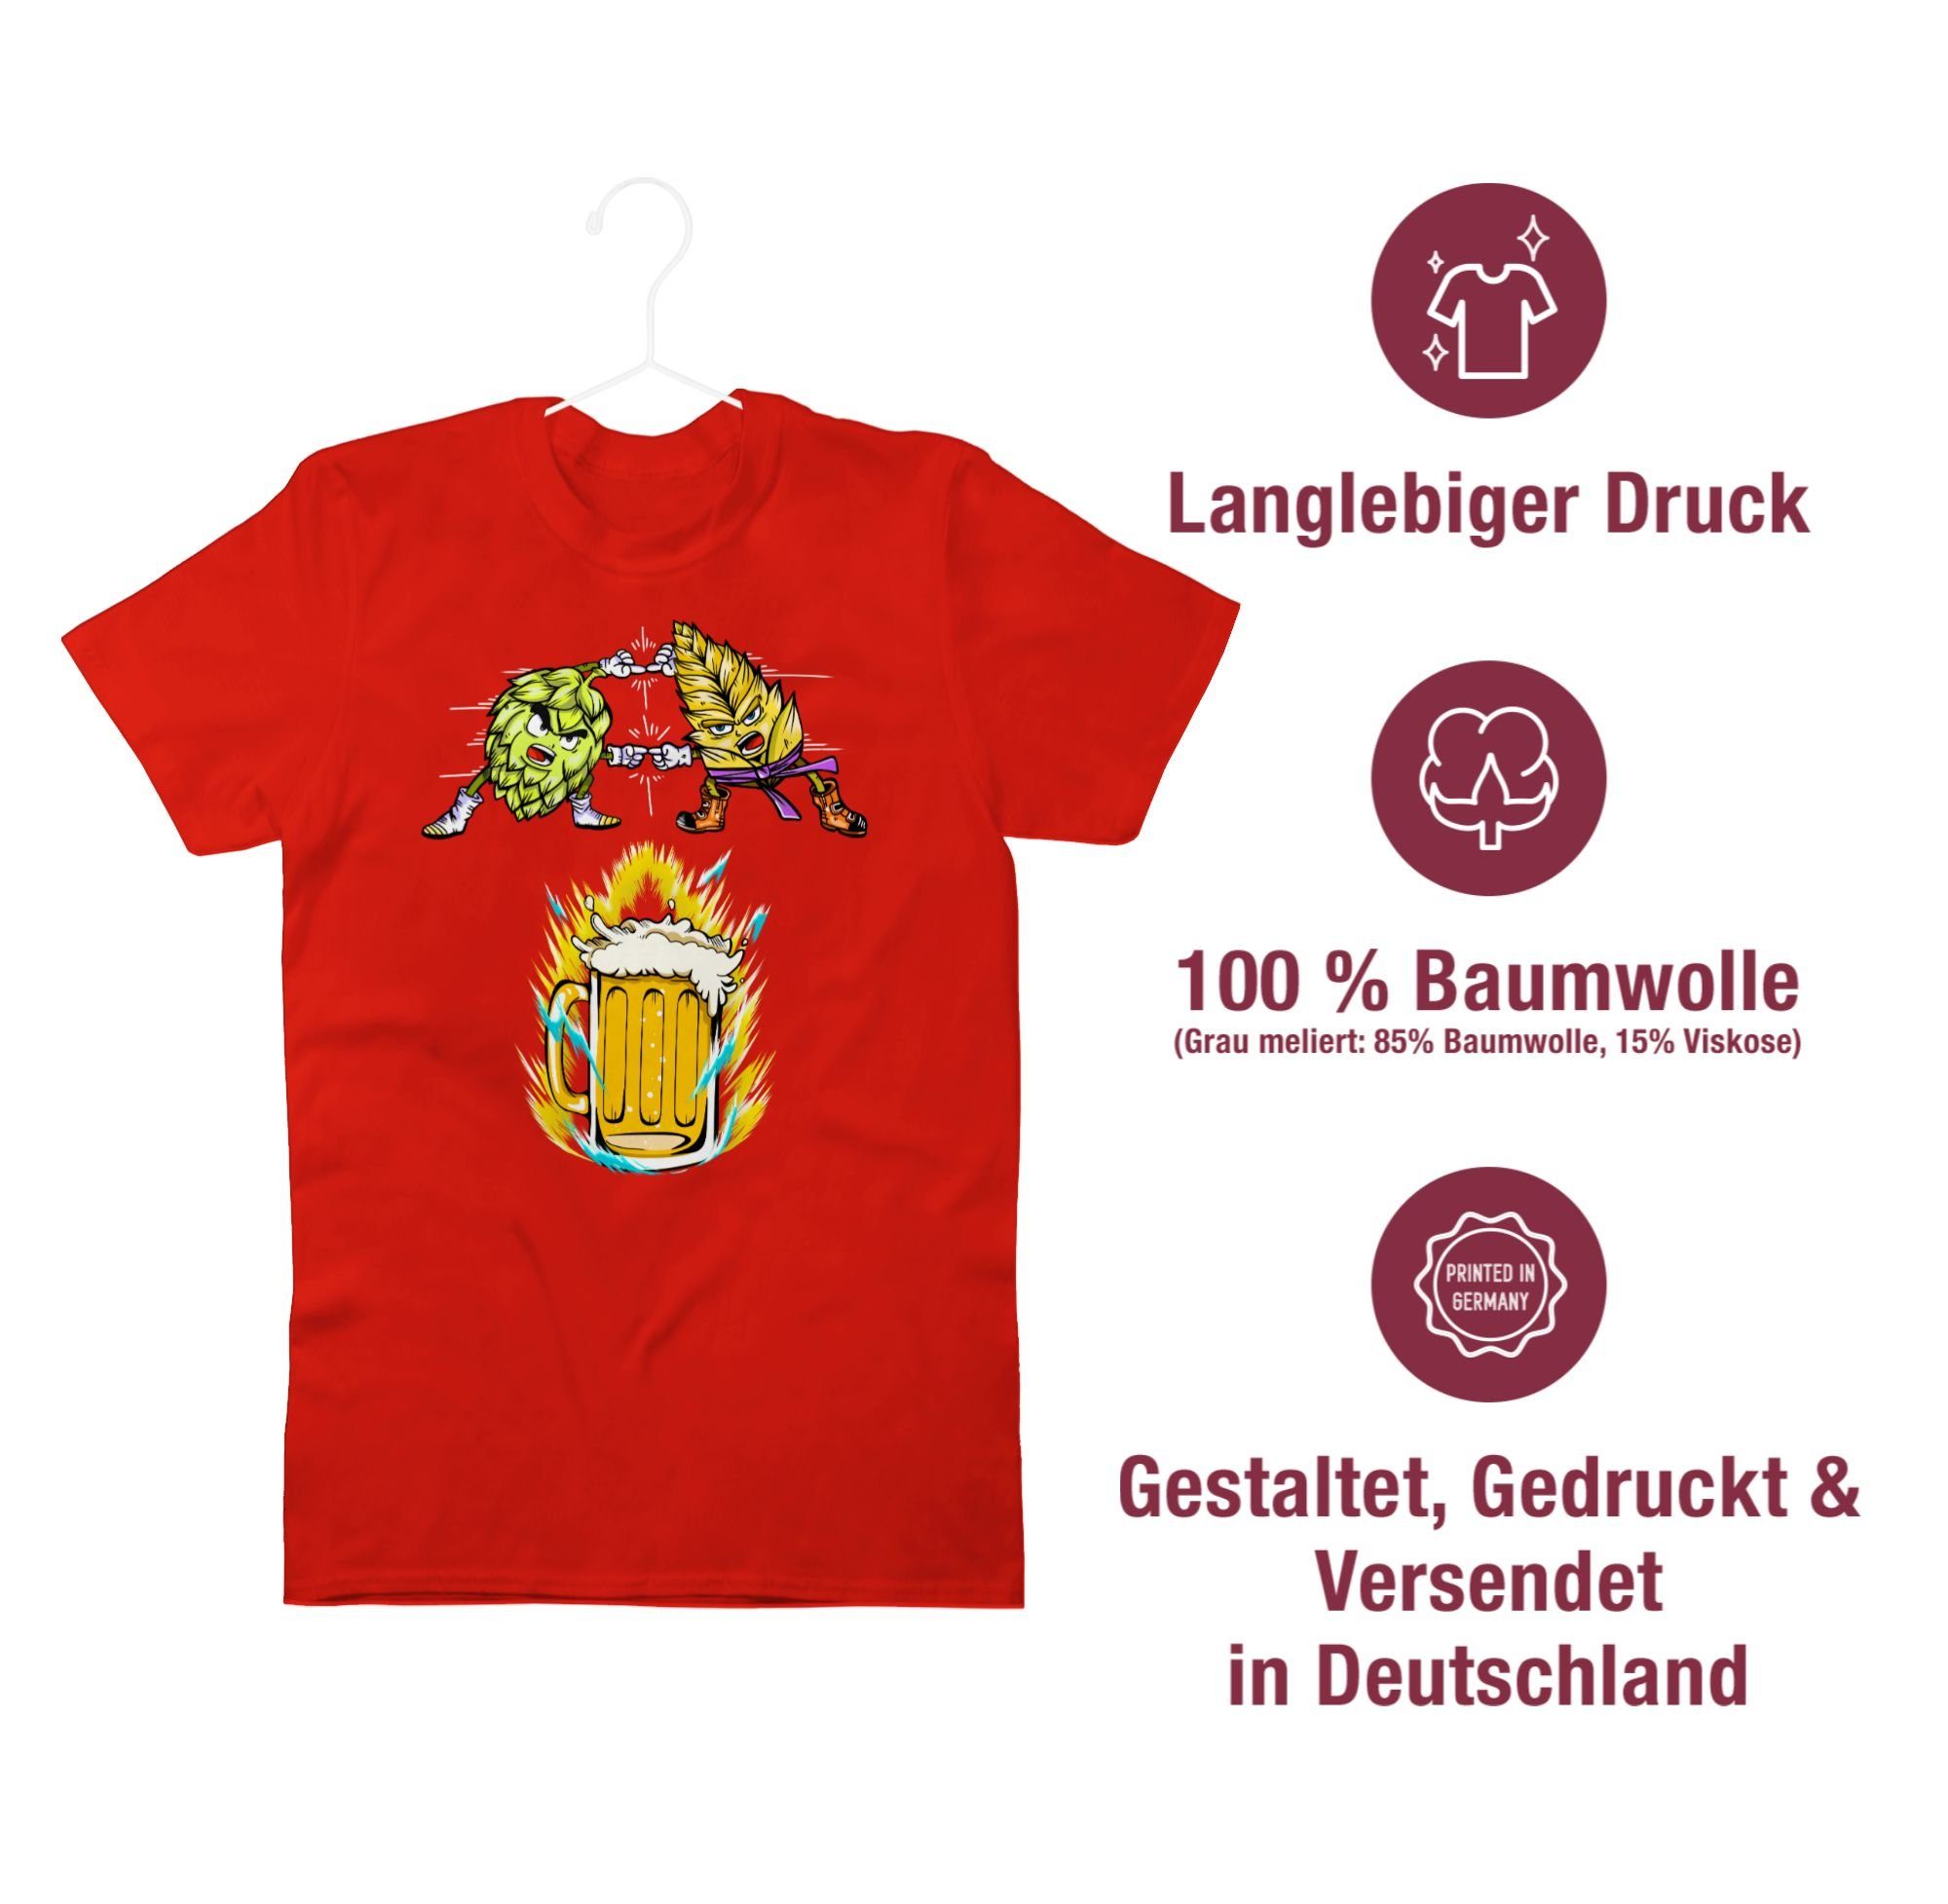 Shirtracer T-Shirt Bier Fusion - Rot 02 Malz Geschenke & Hopfen Nerd